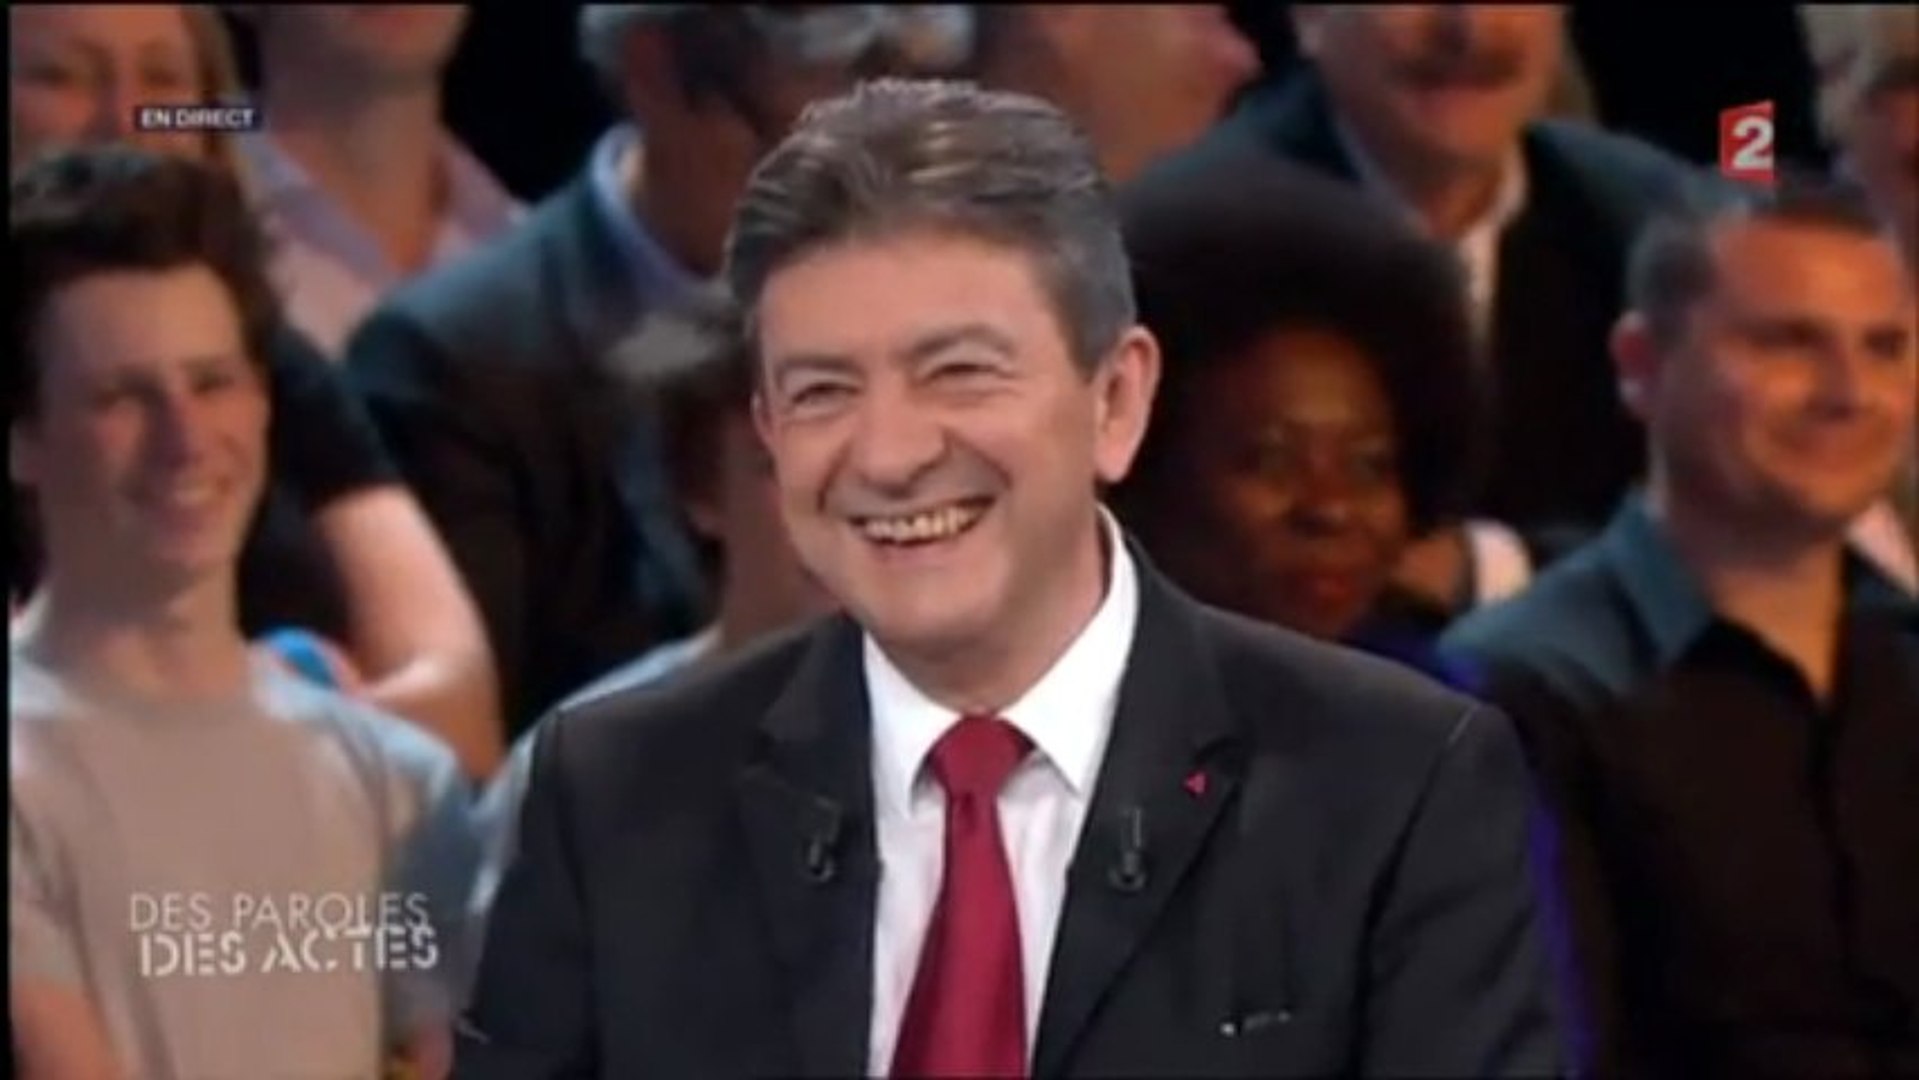 Jean-Luc Mélenchon à "Des paroles et des actes" le 25/04/2013 - Vidéo  Dailymotion